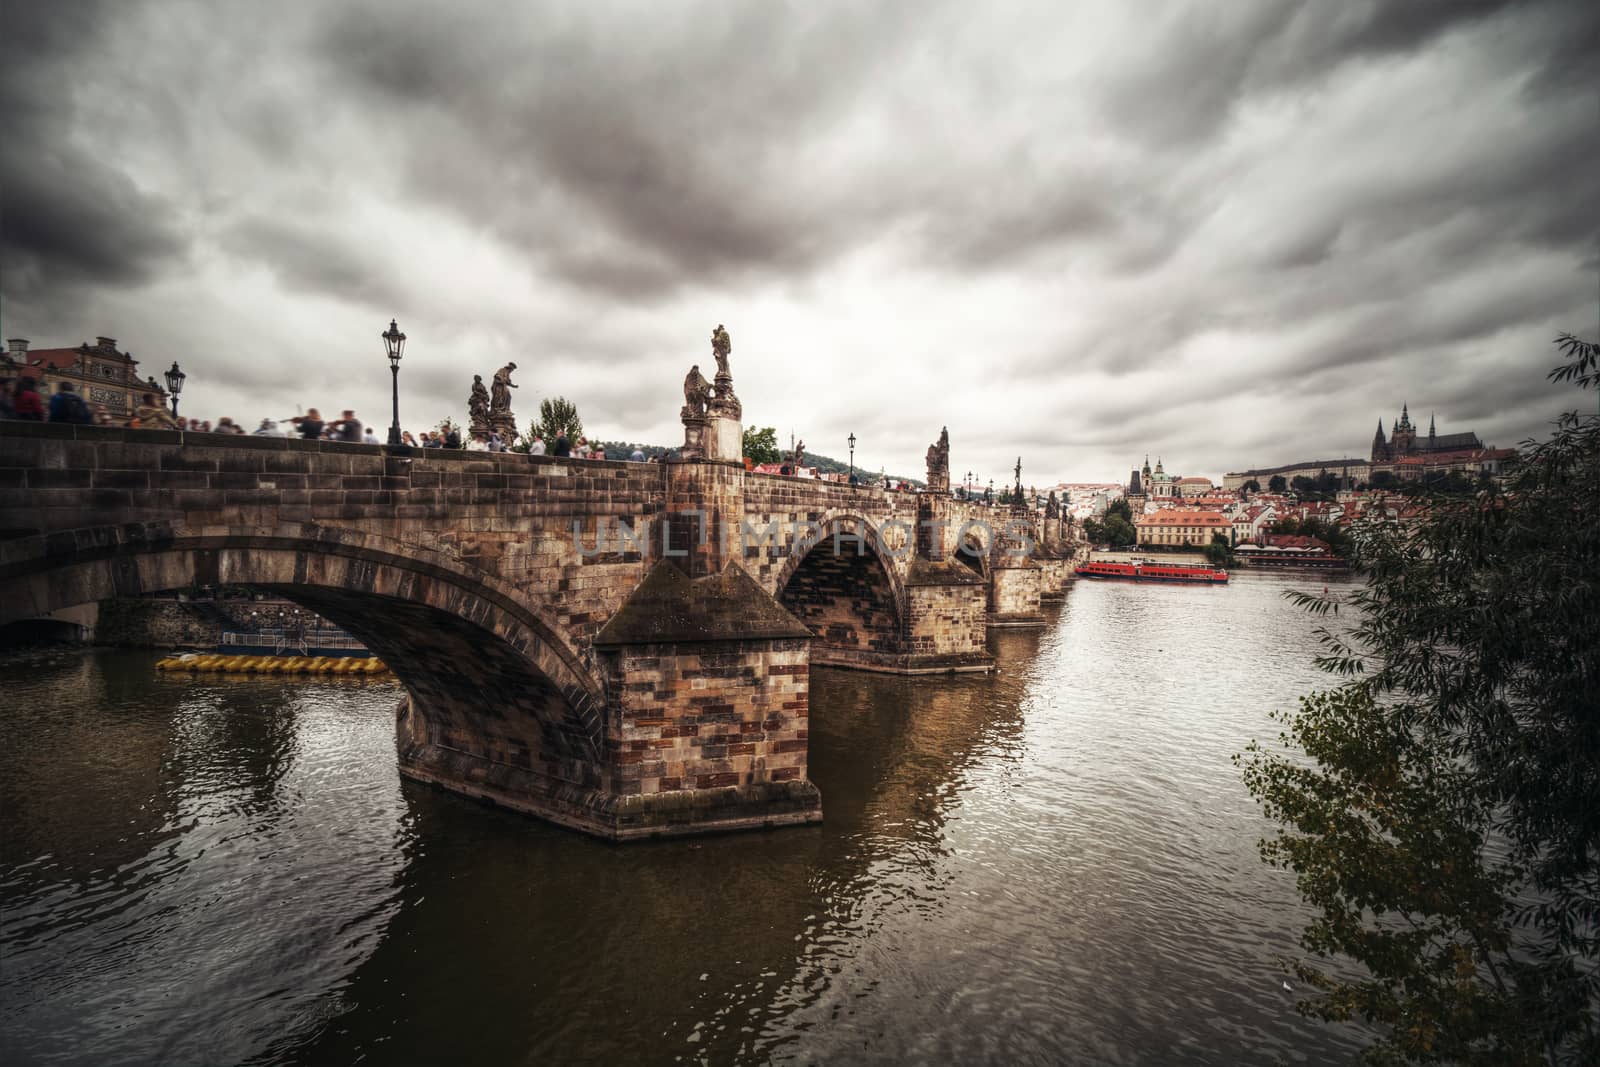 Charles Bridge in Prague. by satariel